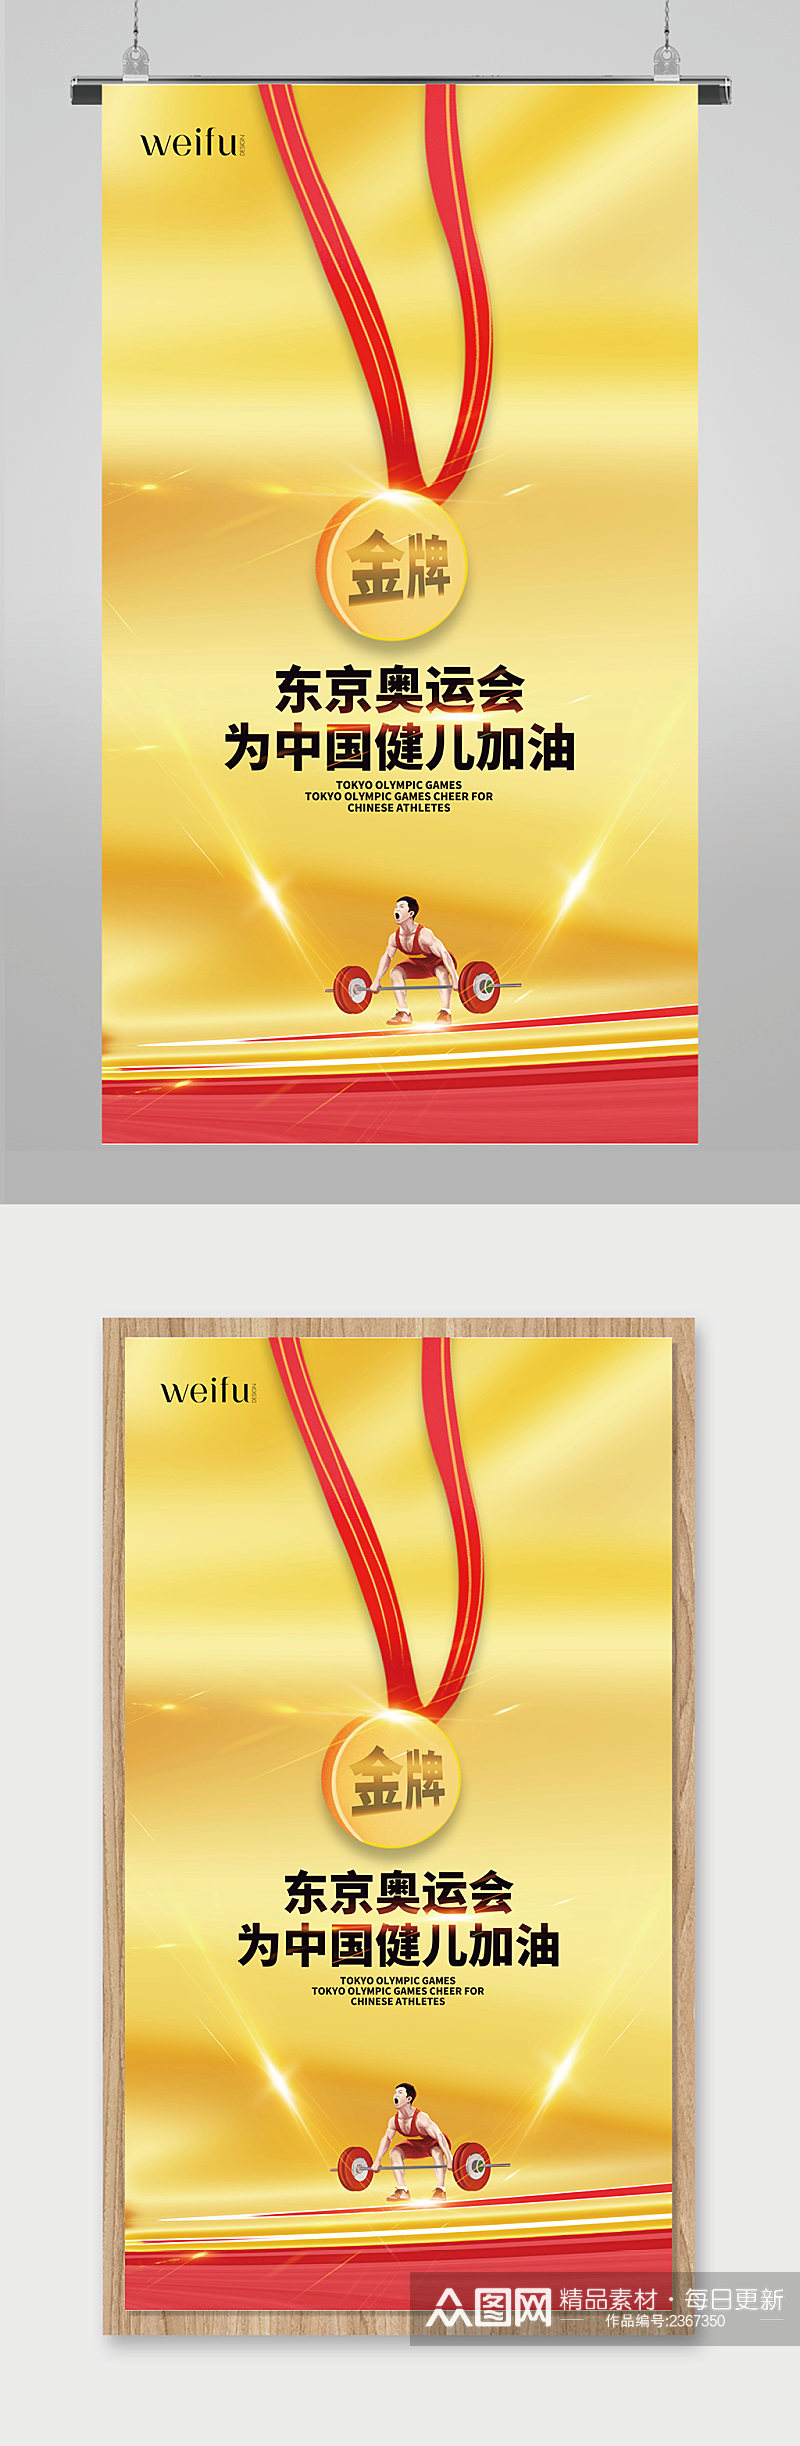 大气东京奥运会中国健儿加油海报素材